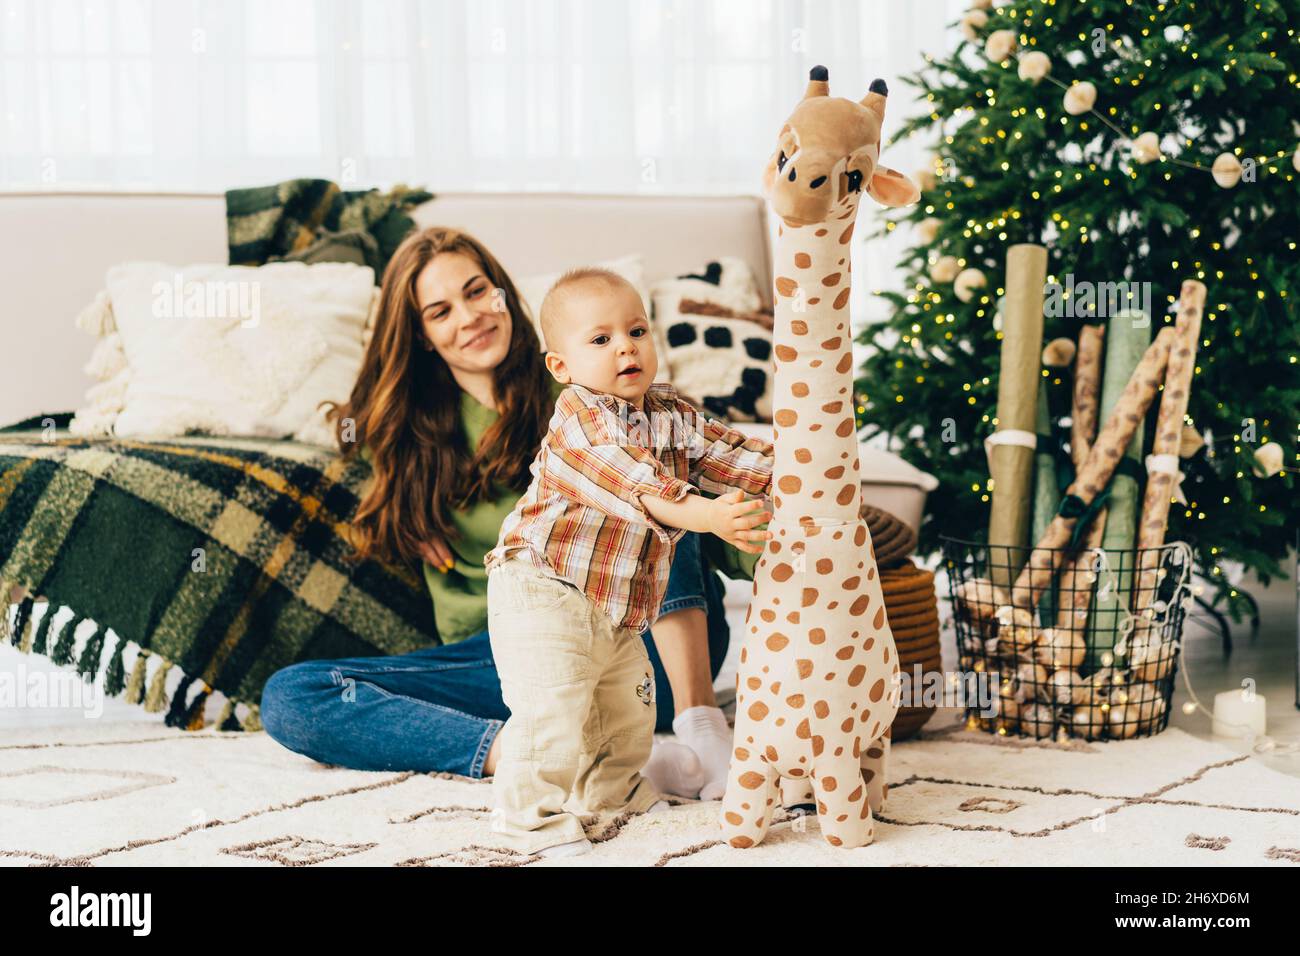 La momie aimante est assise sur le sol et regarde l'enfant jouer avec un grand jouet girafe en peluche. Banque D'Images